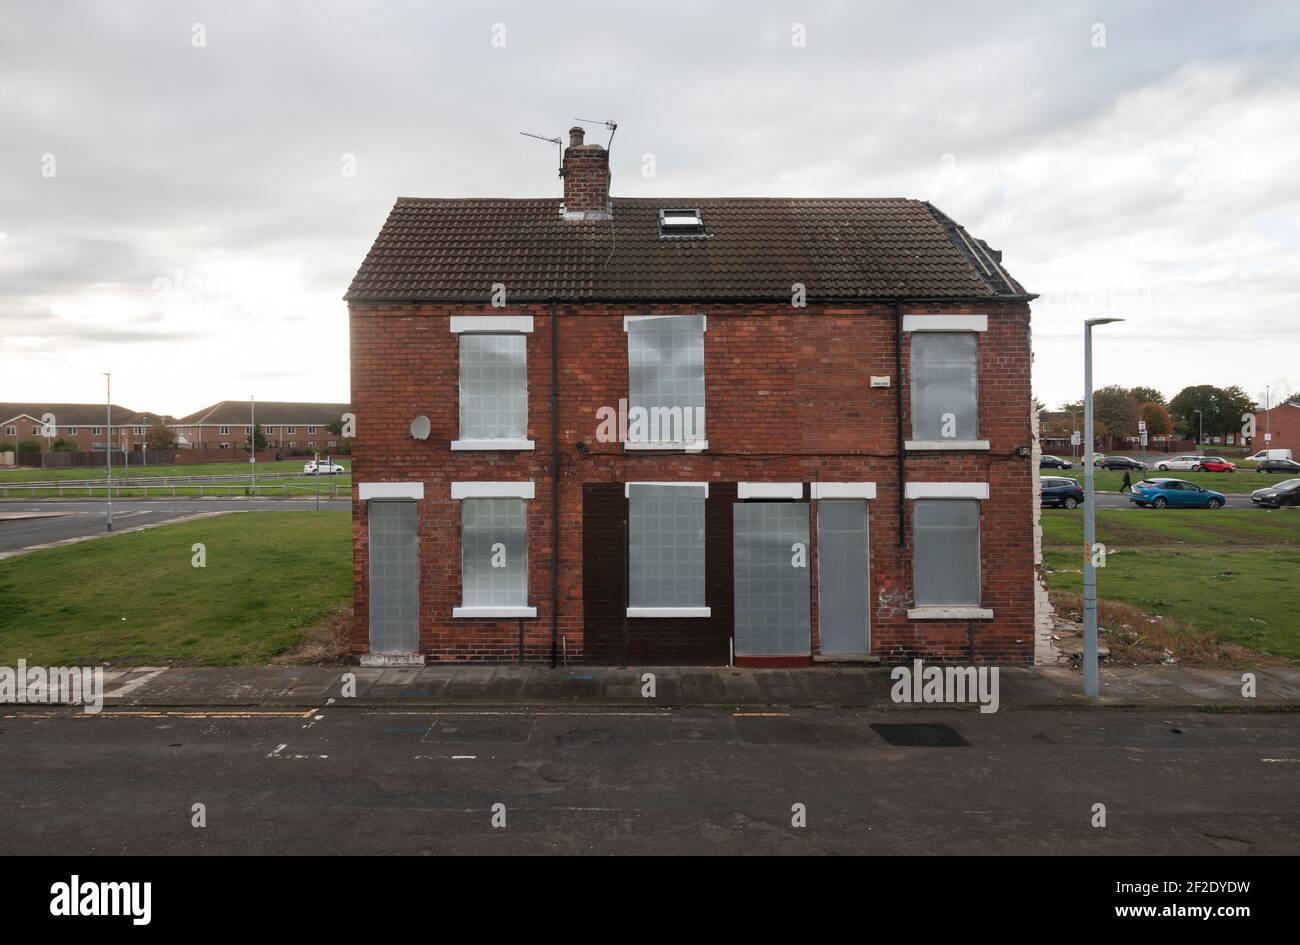 Se embarcaron viviendas en espera de demolición en Gresham, Middlesbrough. Foto de stock